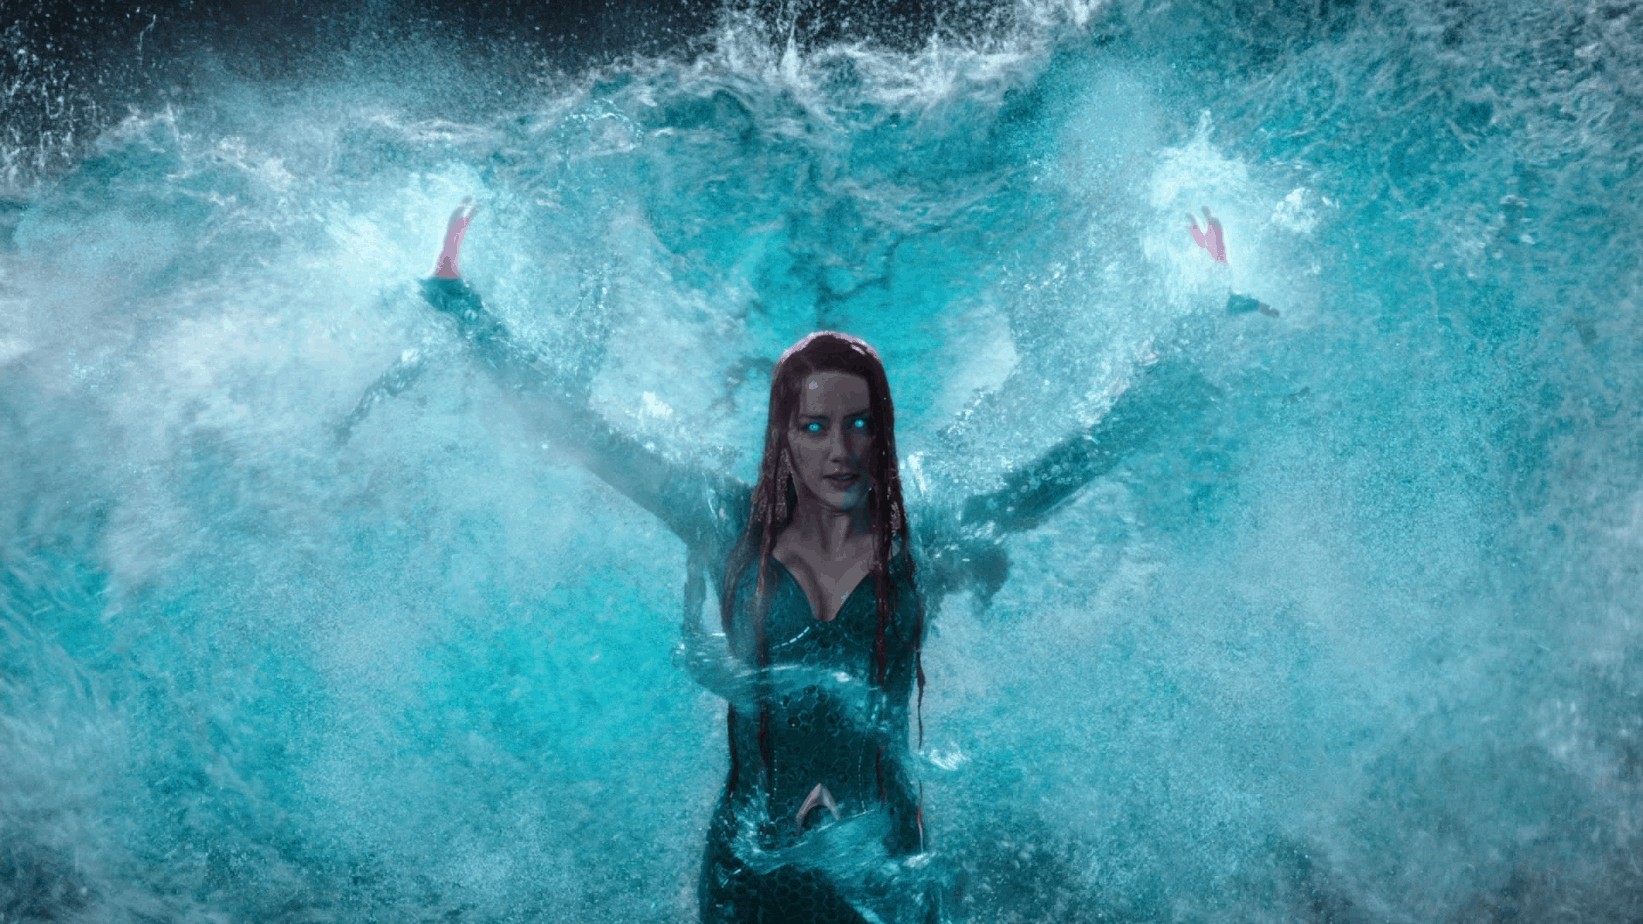 Scenes from the film Aquaman